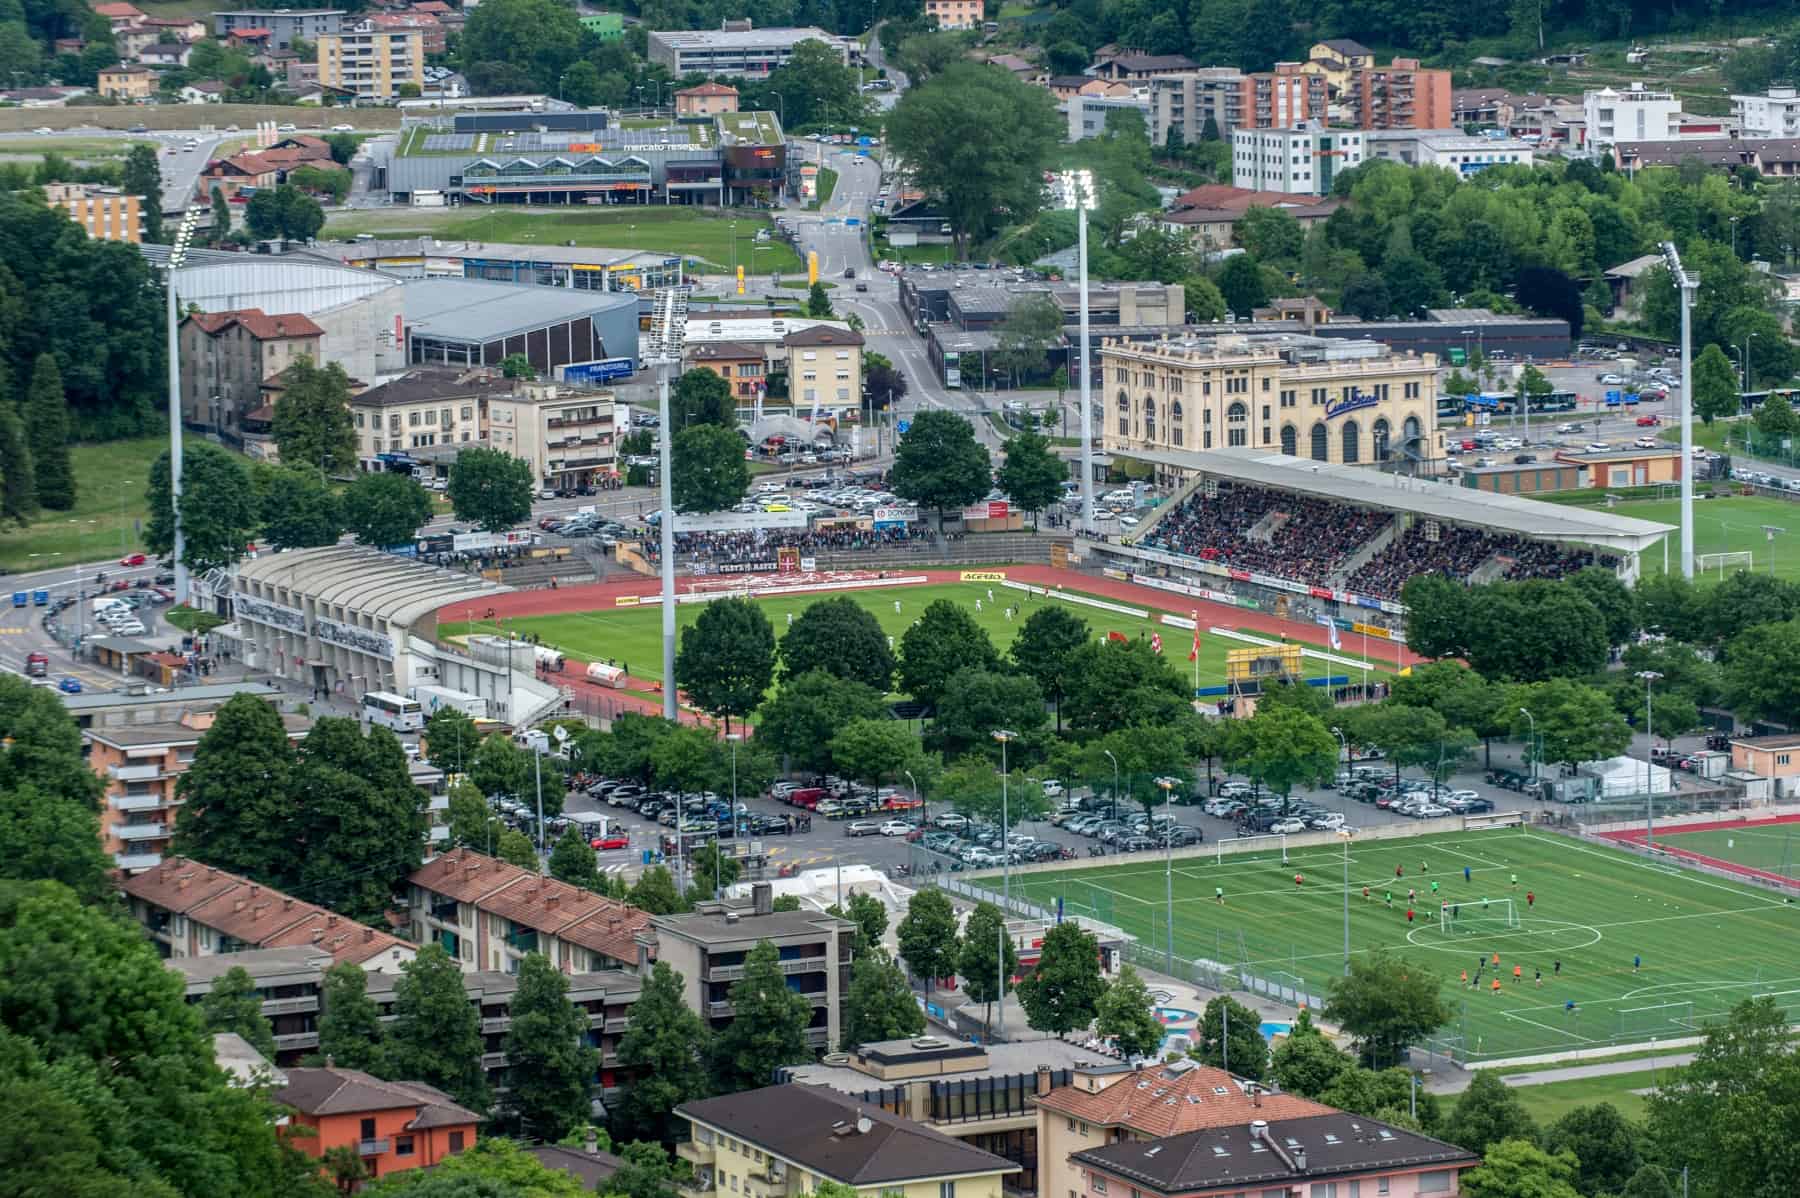 Primato d'affluenza a Cornaredo - FC Lugano